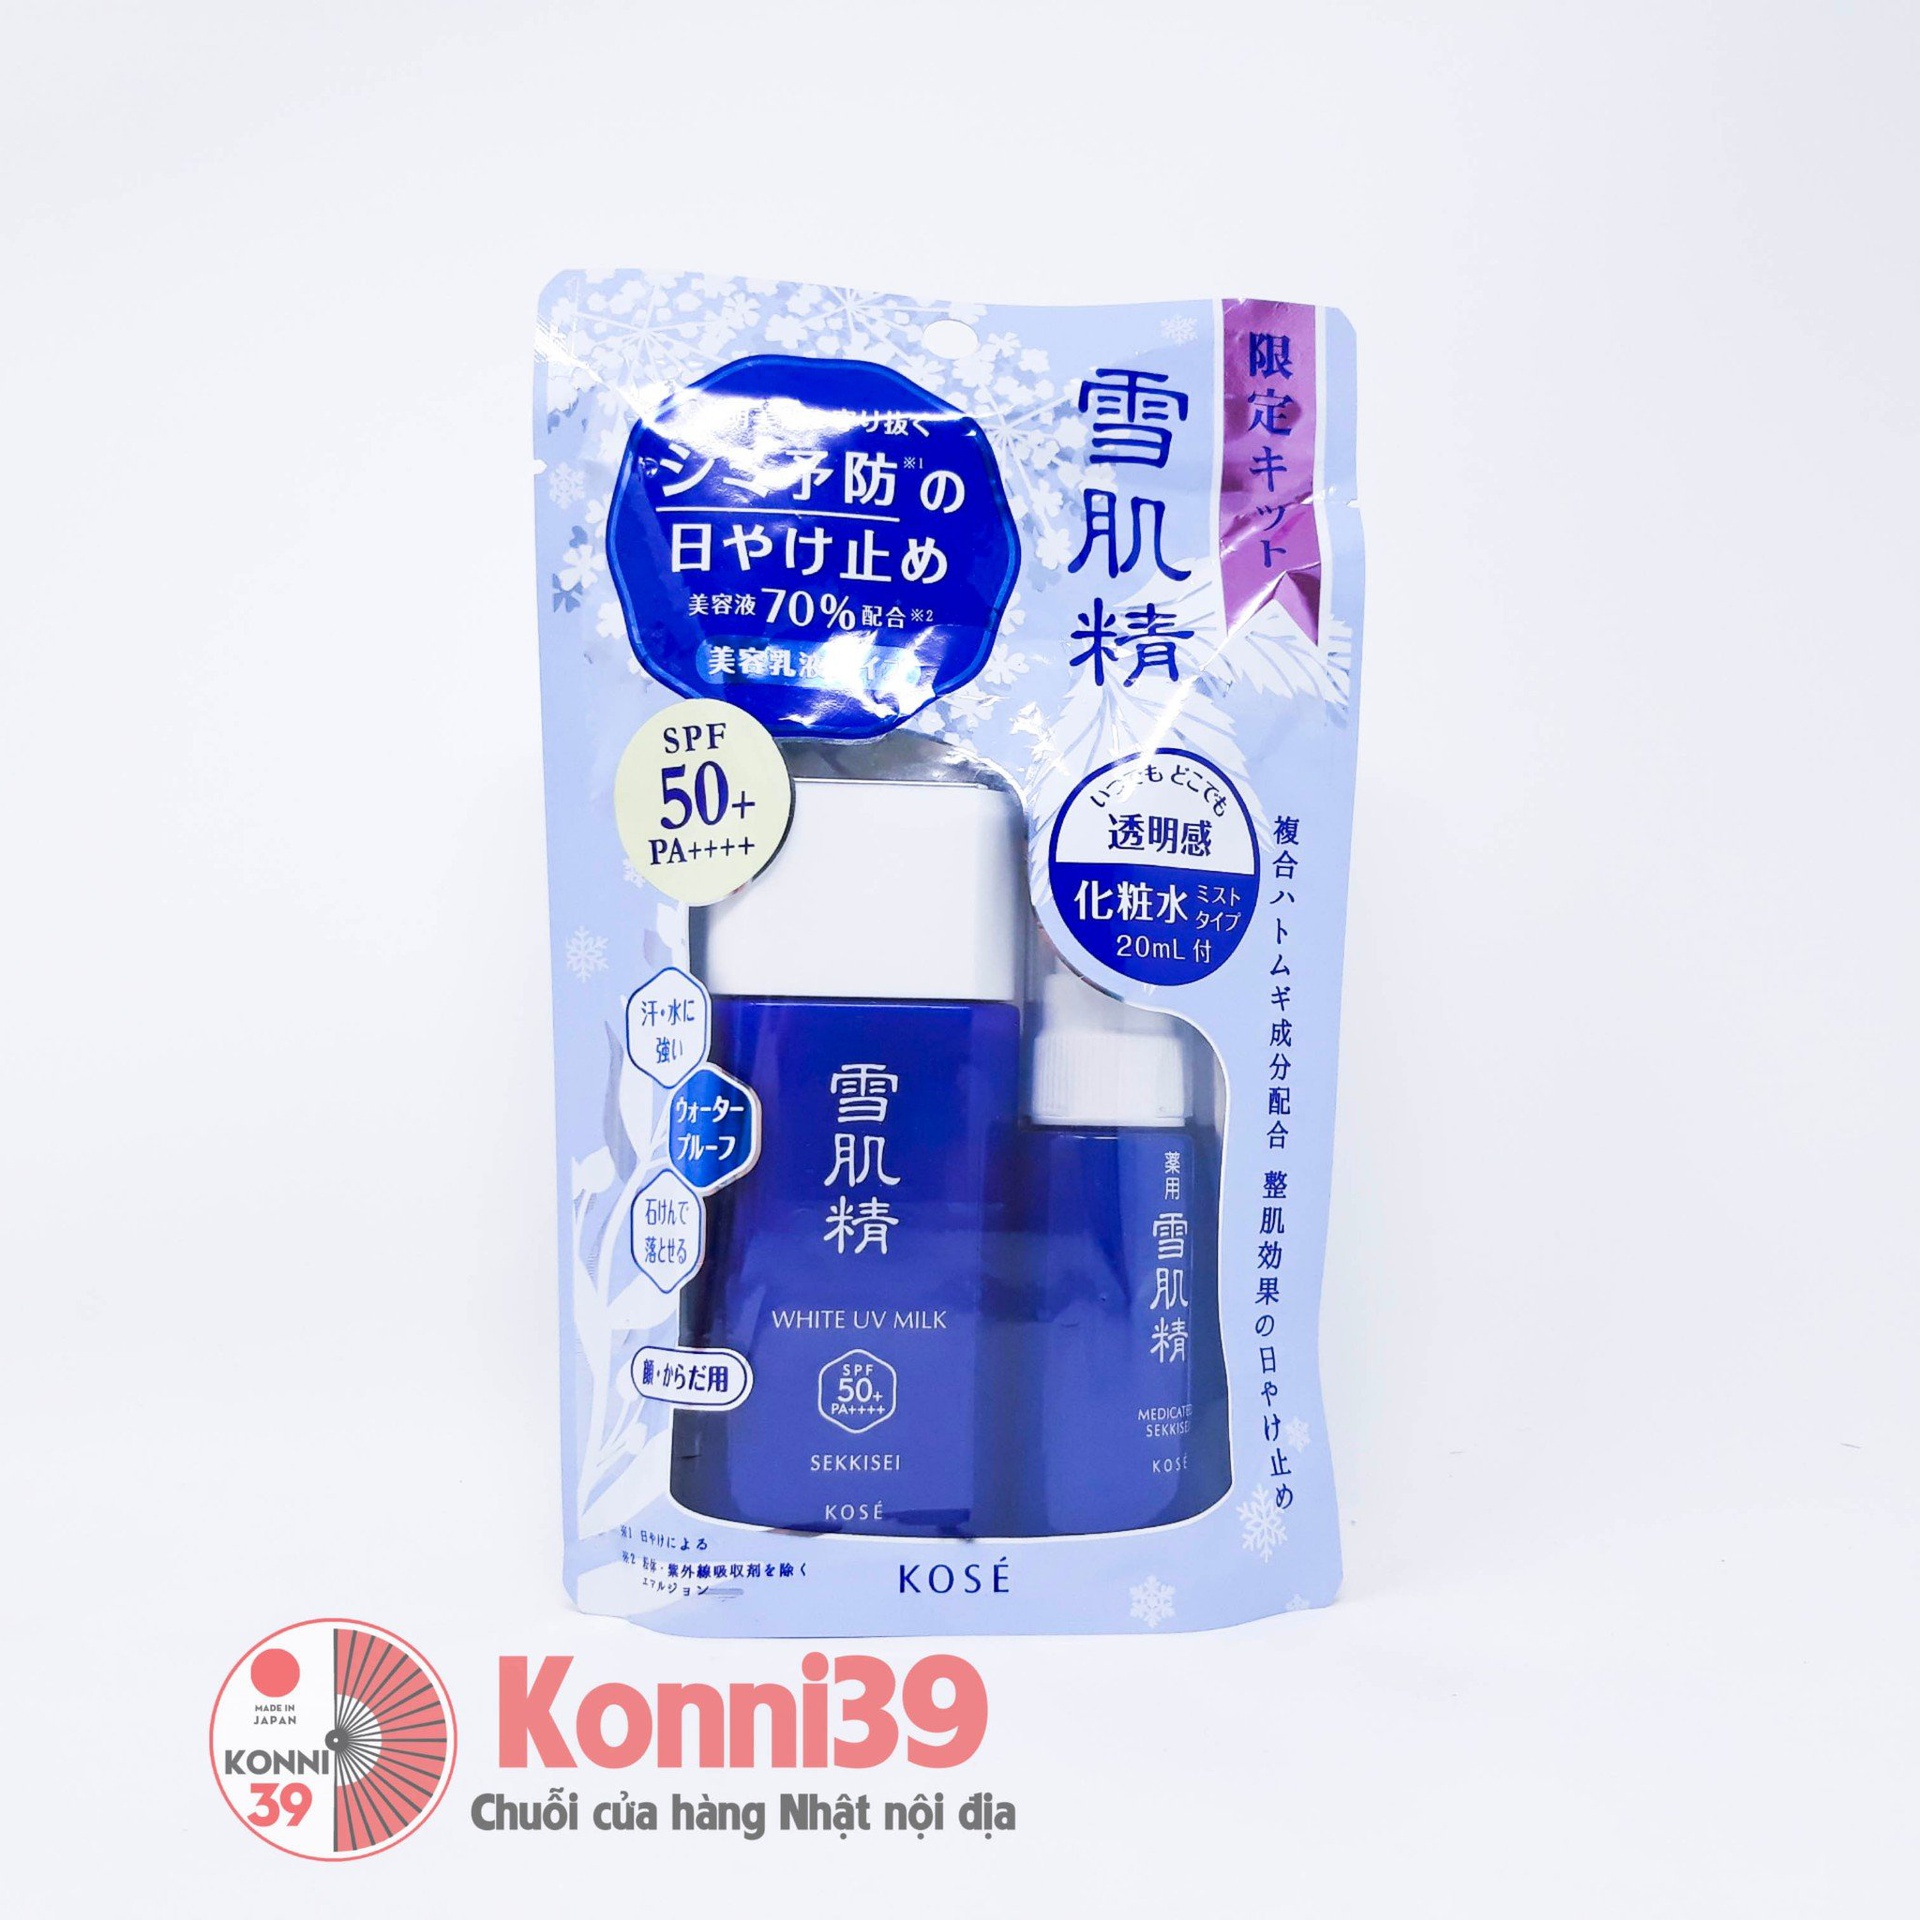 Kem chống nắng Kose Sekkisei White UV Milk dạng sữa (kèm nước hoa hồng) SPF50+PA++++